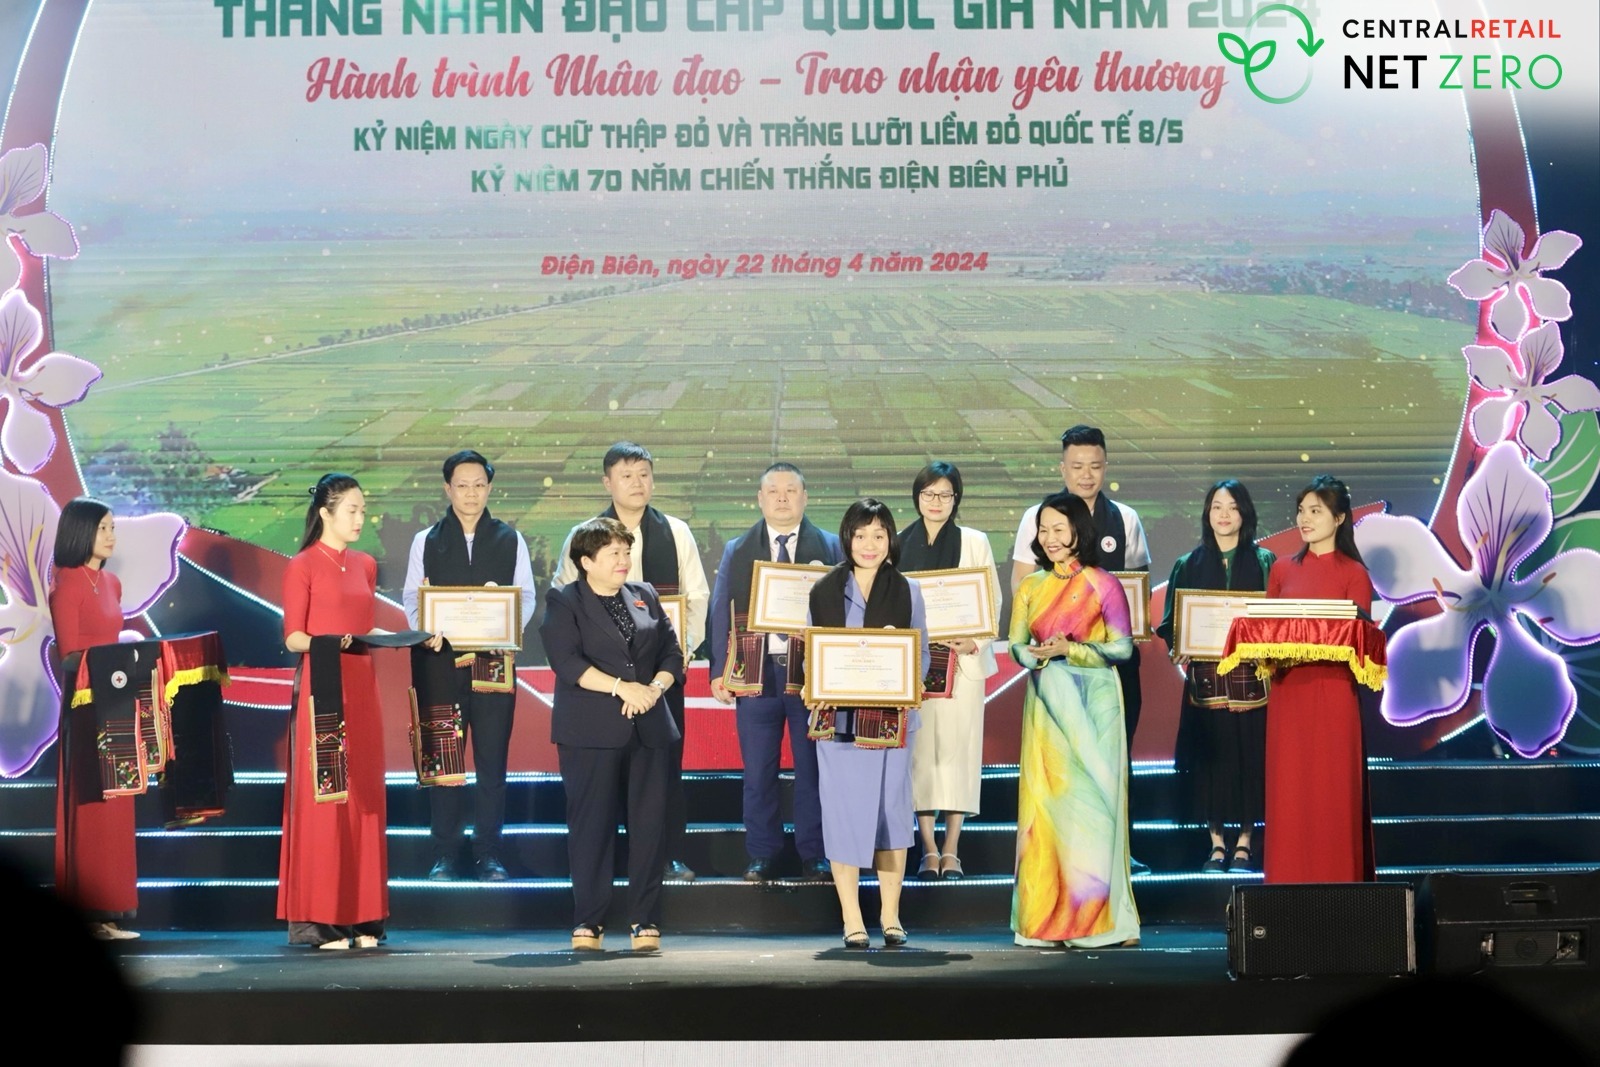 Tập đoàn Central Retail in Vietnam đã vinh dự được Trung ương Hội Chữ thập đỏ Việt Nam trao tặng bằng khen vì những đóng góp tích cực cho cộng đồng